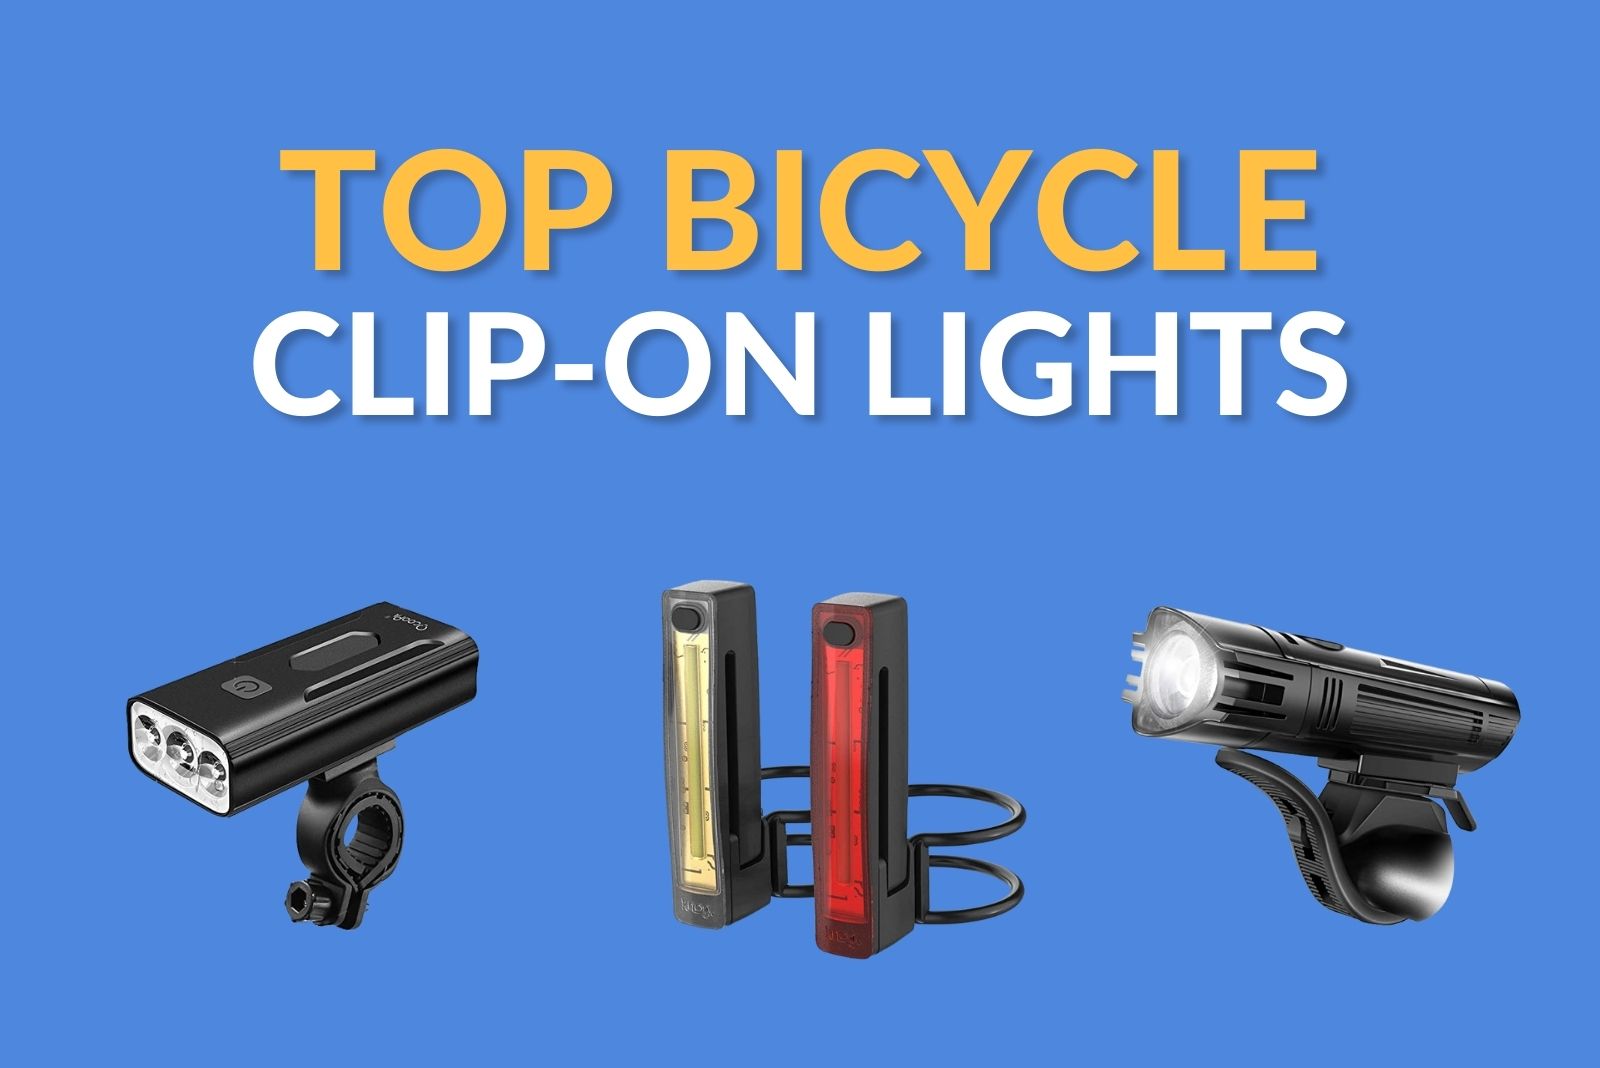 Best Budget Bike Lights [Top 3 Clip-On LED Cycling Light Sets] - Best Clip On Bike Lights